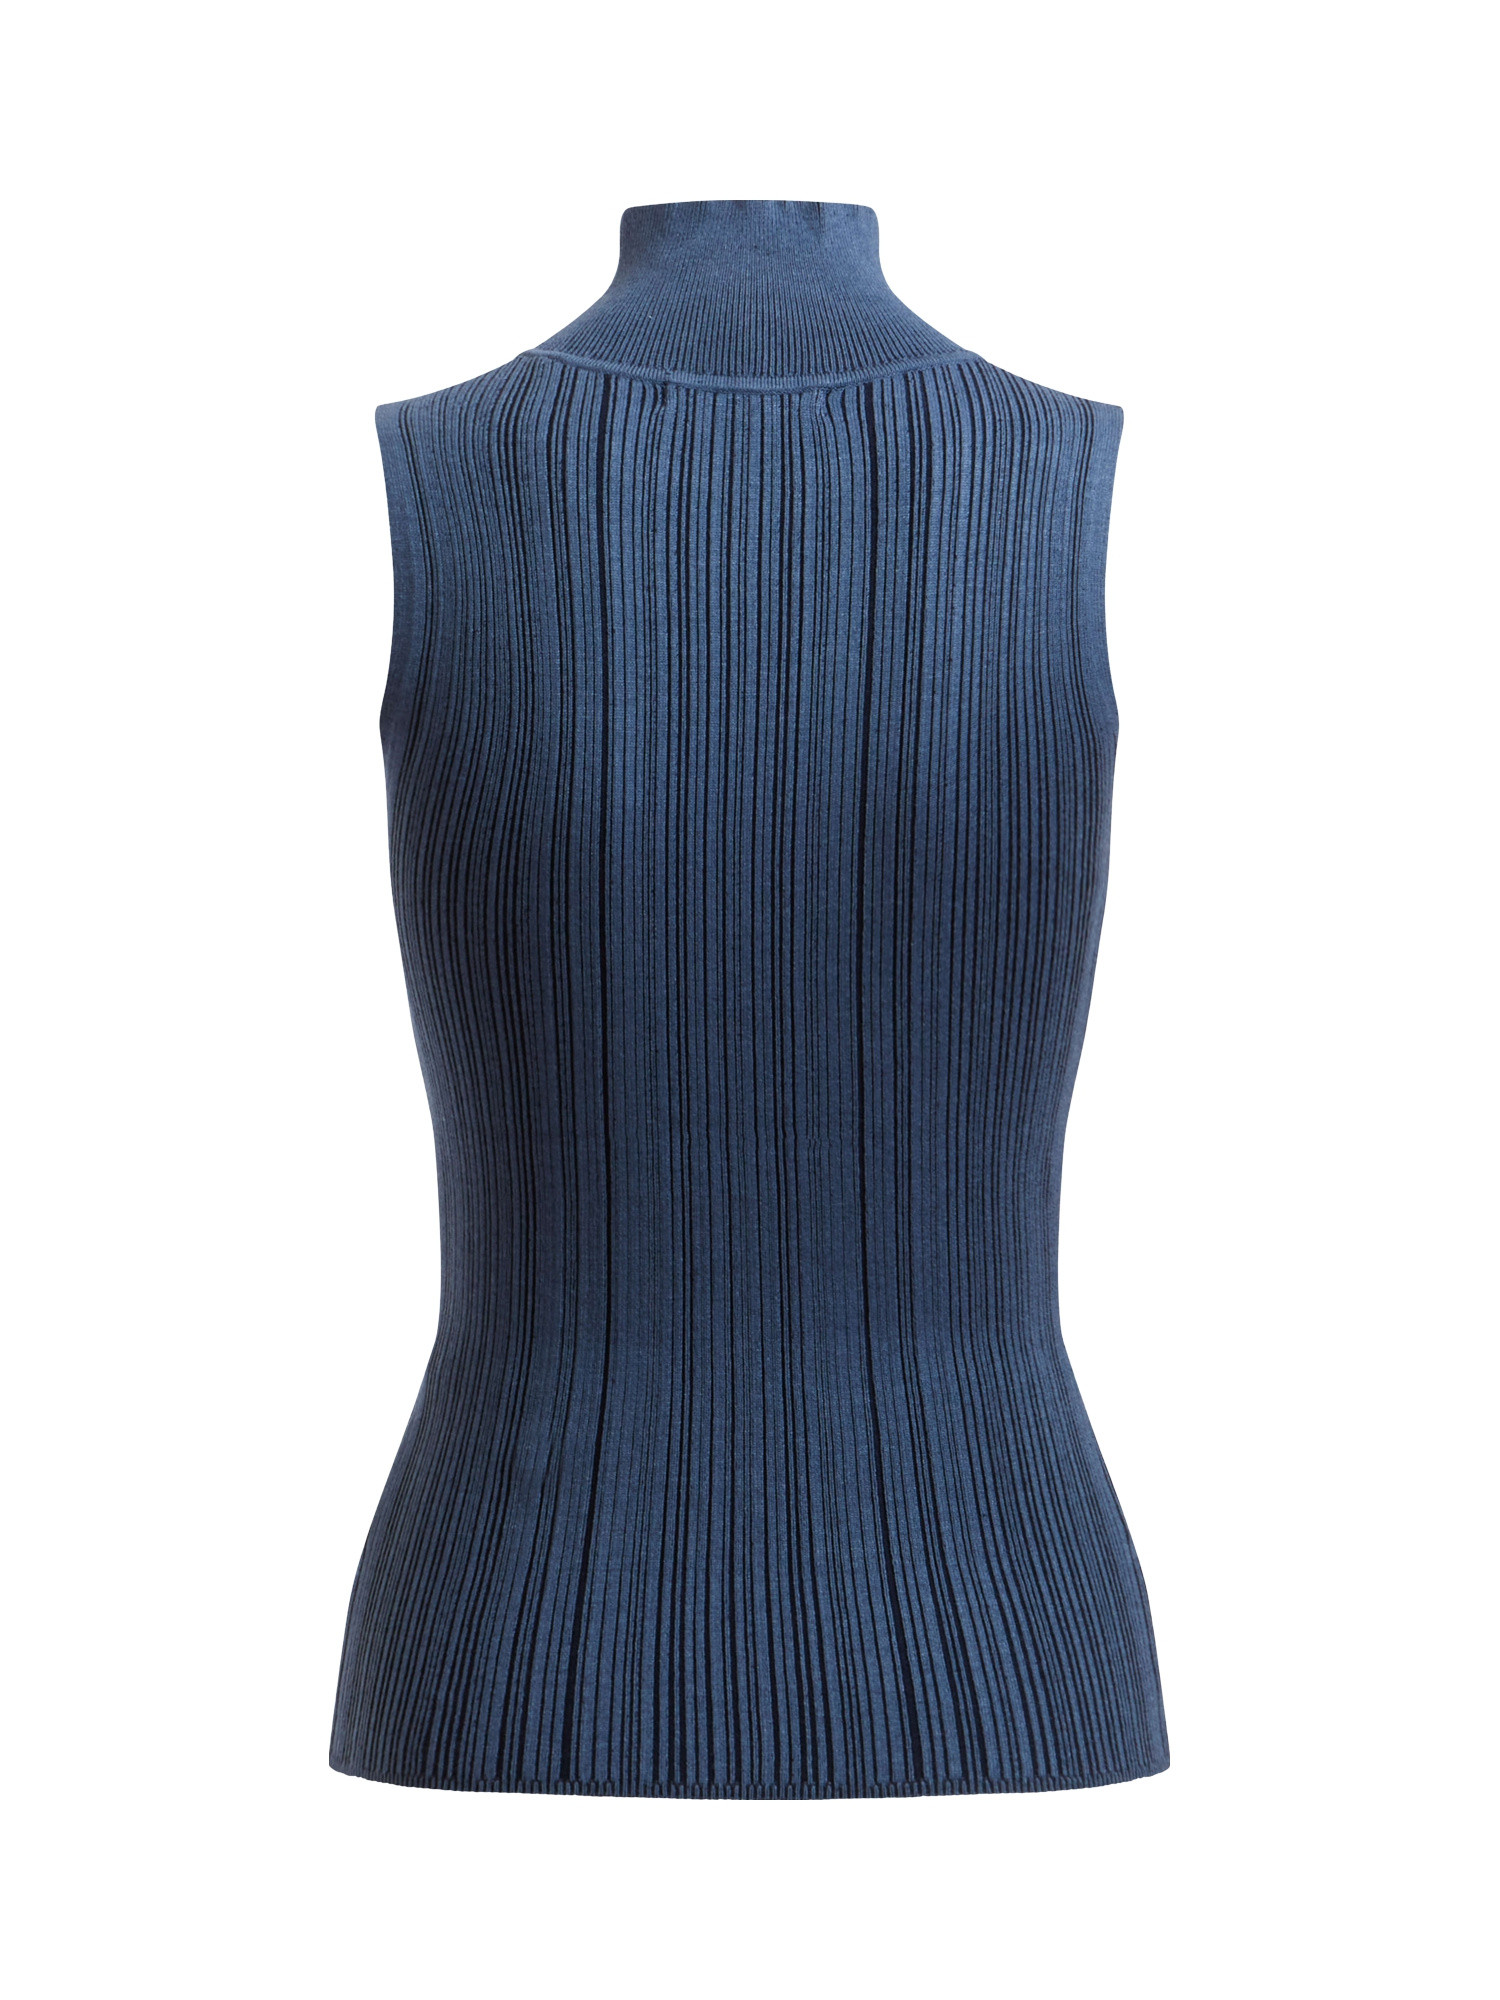 Viscose blend knit top, Dark Blue, large image number 1